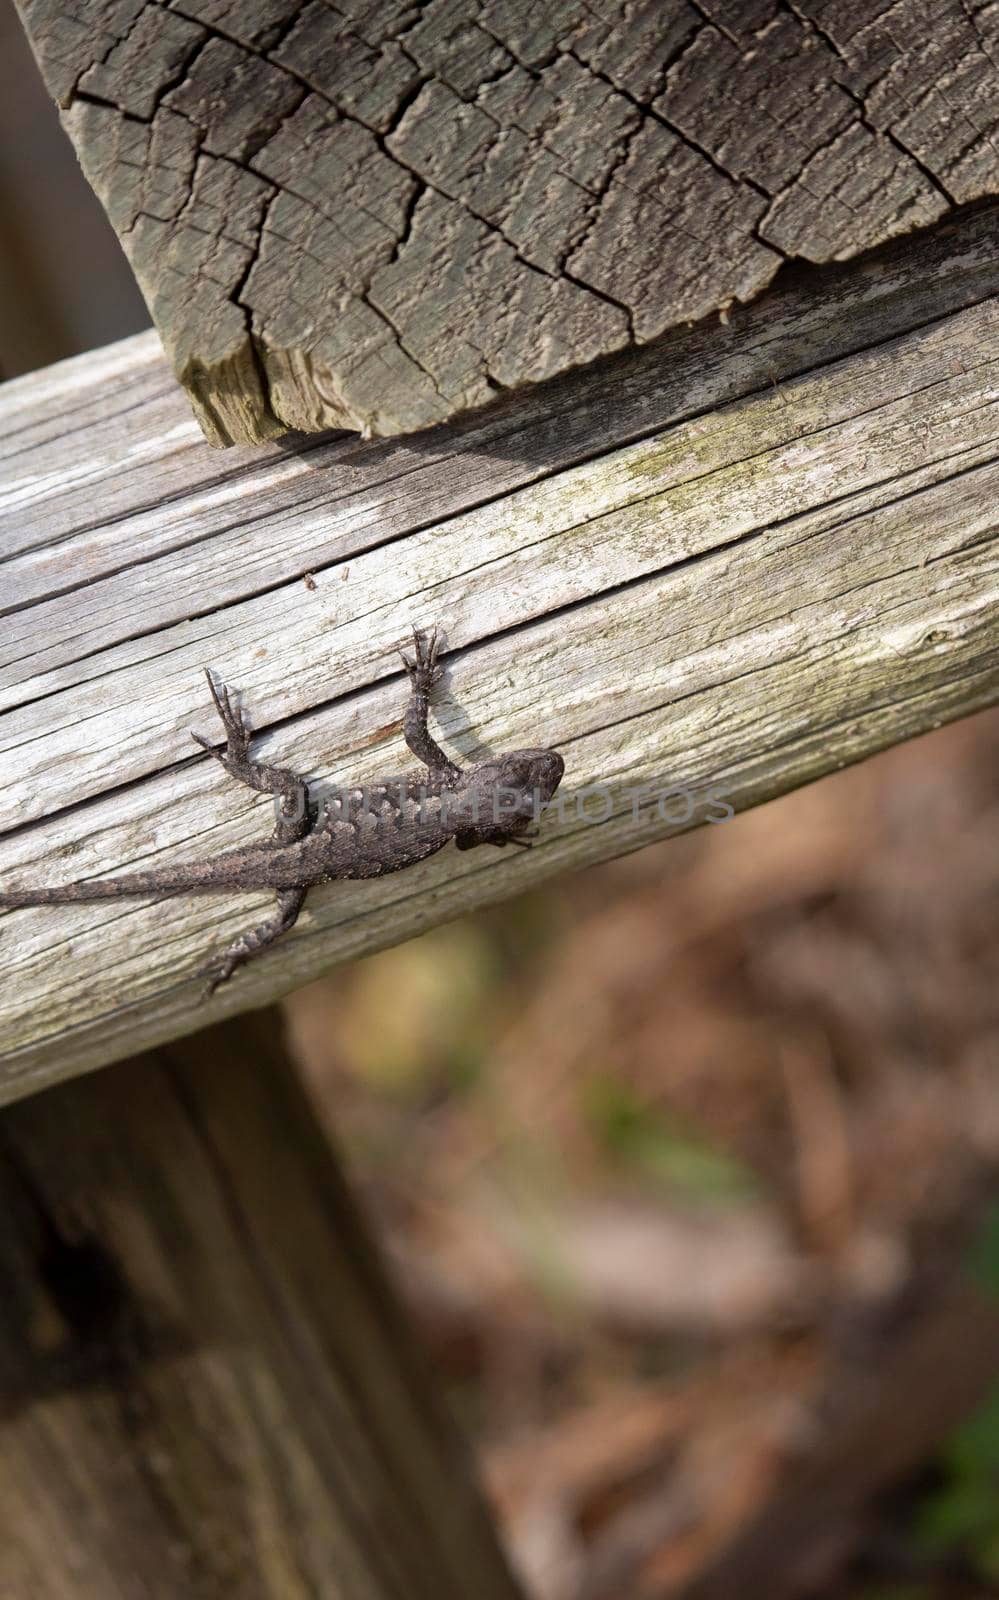 Female Male Eastern Fence Lizard by tornado98